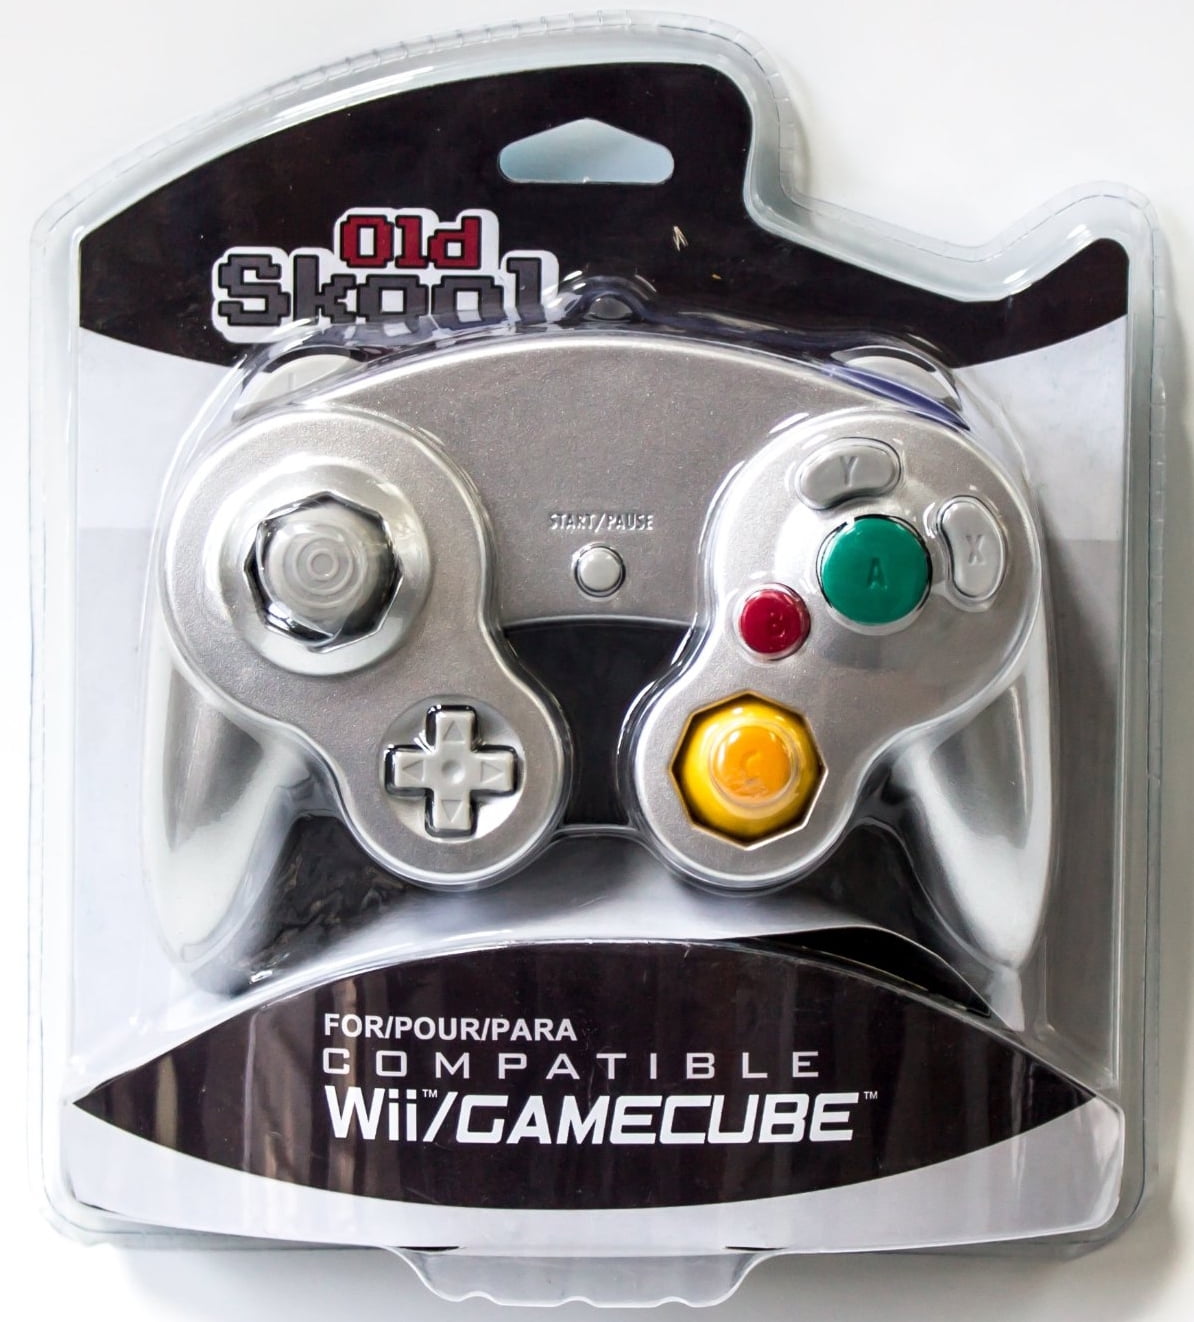 Nintendo Wii /GameCube CirKa Controller Silver Controller ...